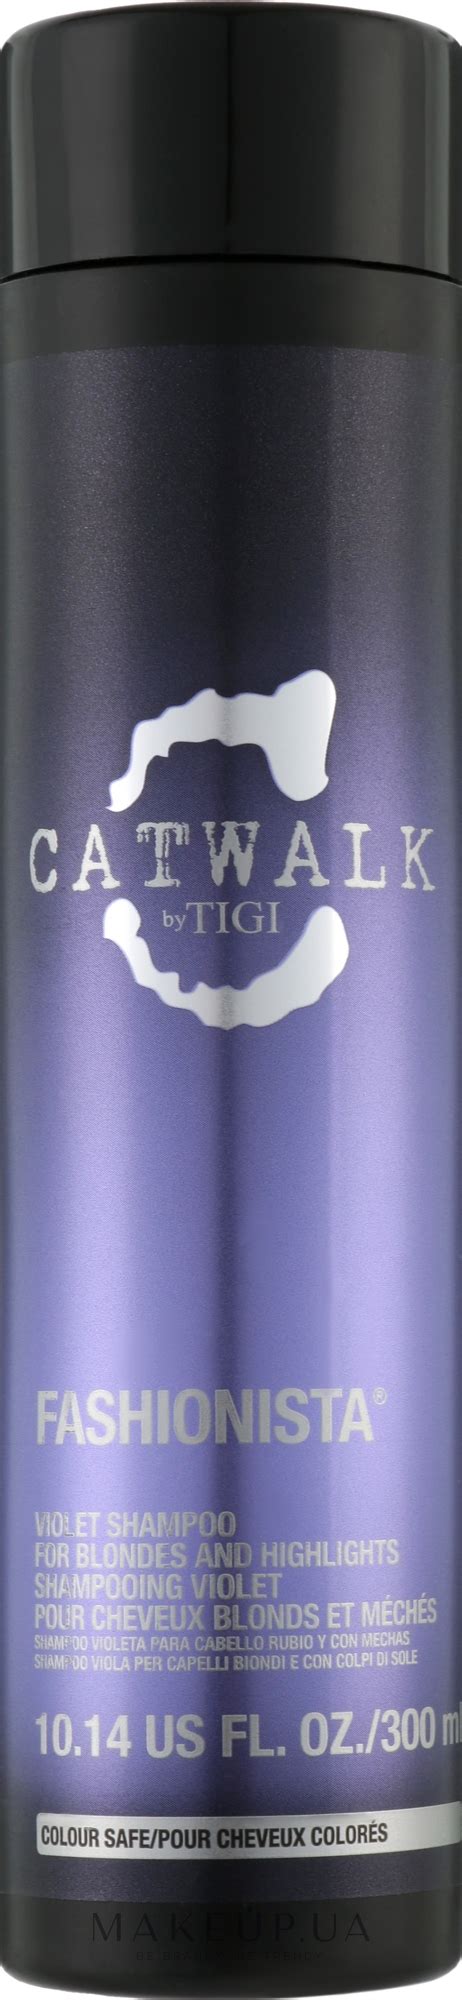 Tigi Catwalk Fashionista Violet Shampoo Фиолетовый шампунь для волос